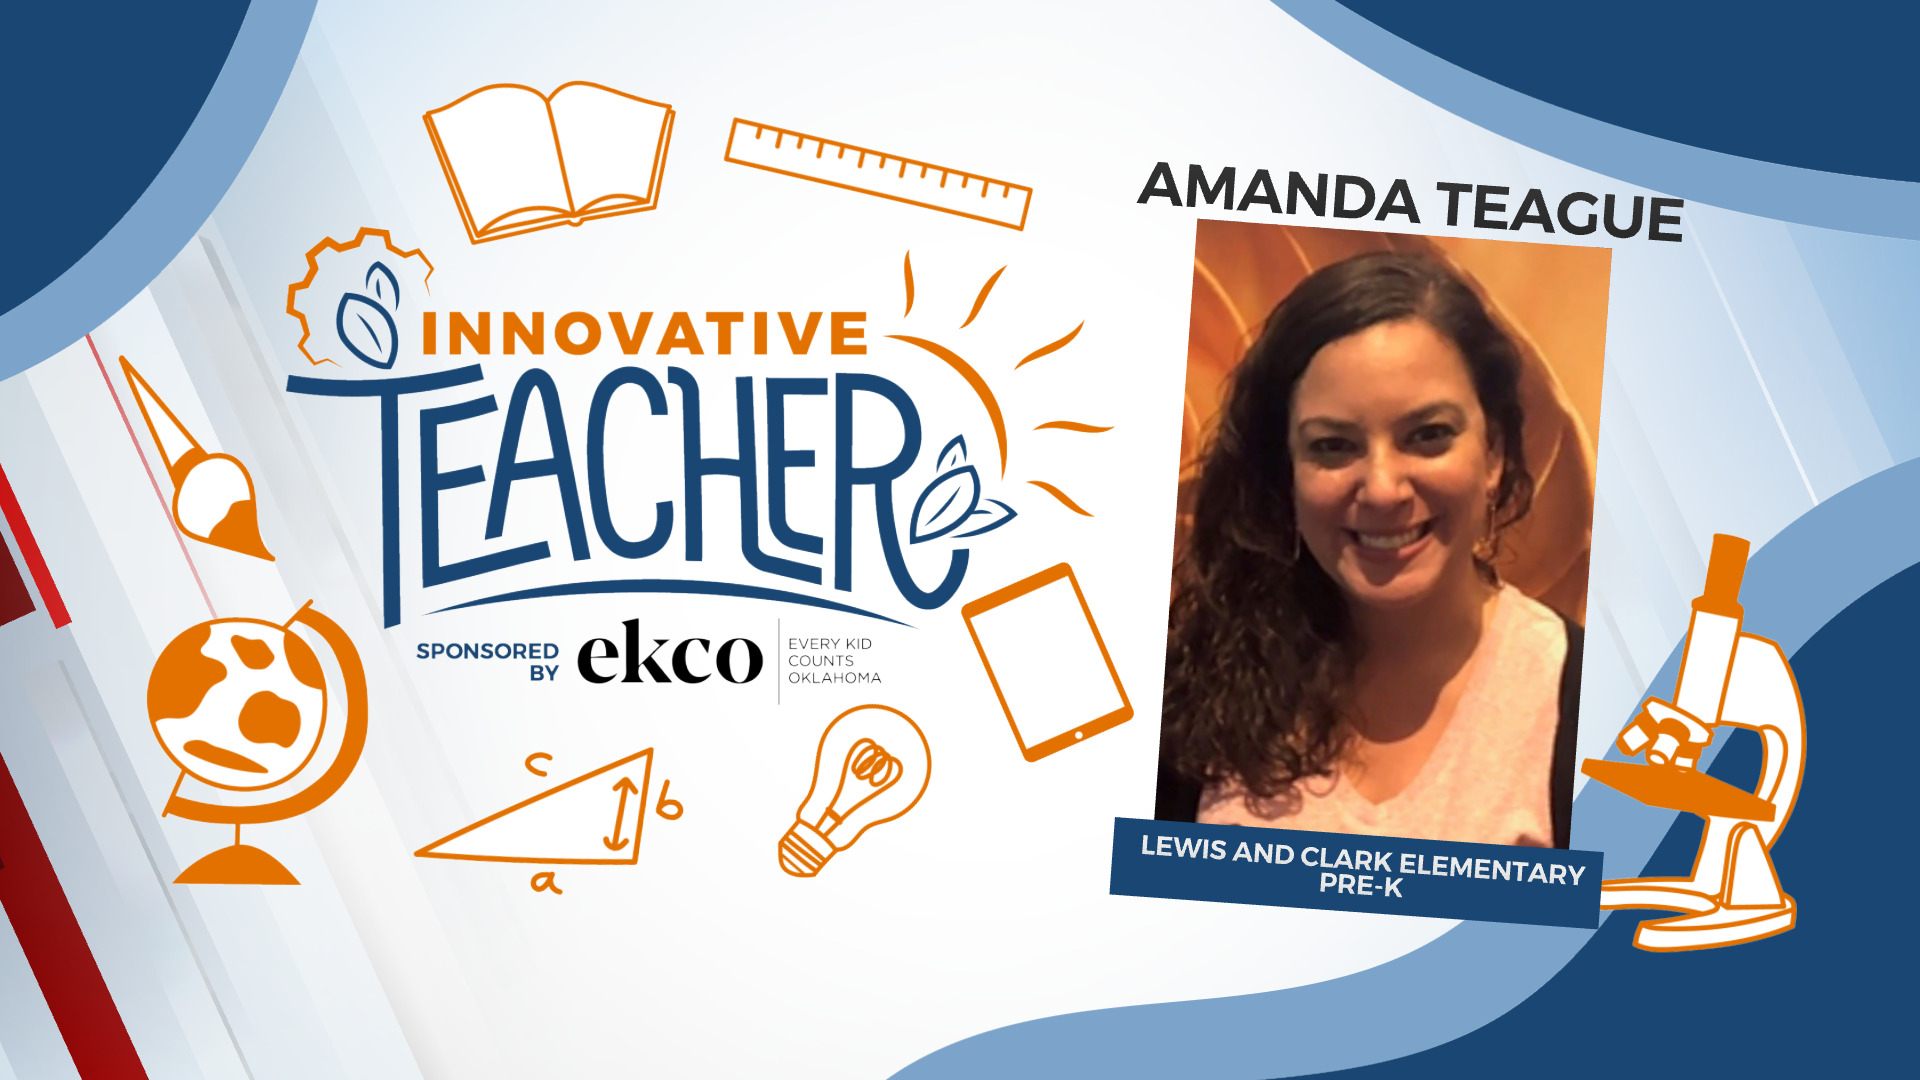 Innovative Teacher: Amanda Teague of Lewis and Clark Elementary